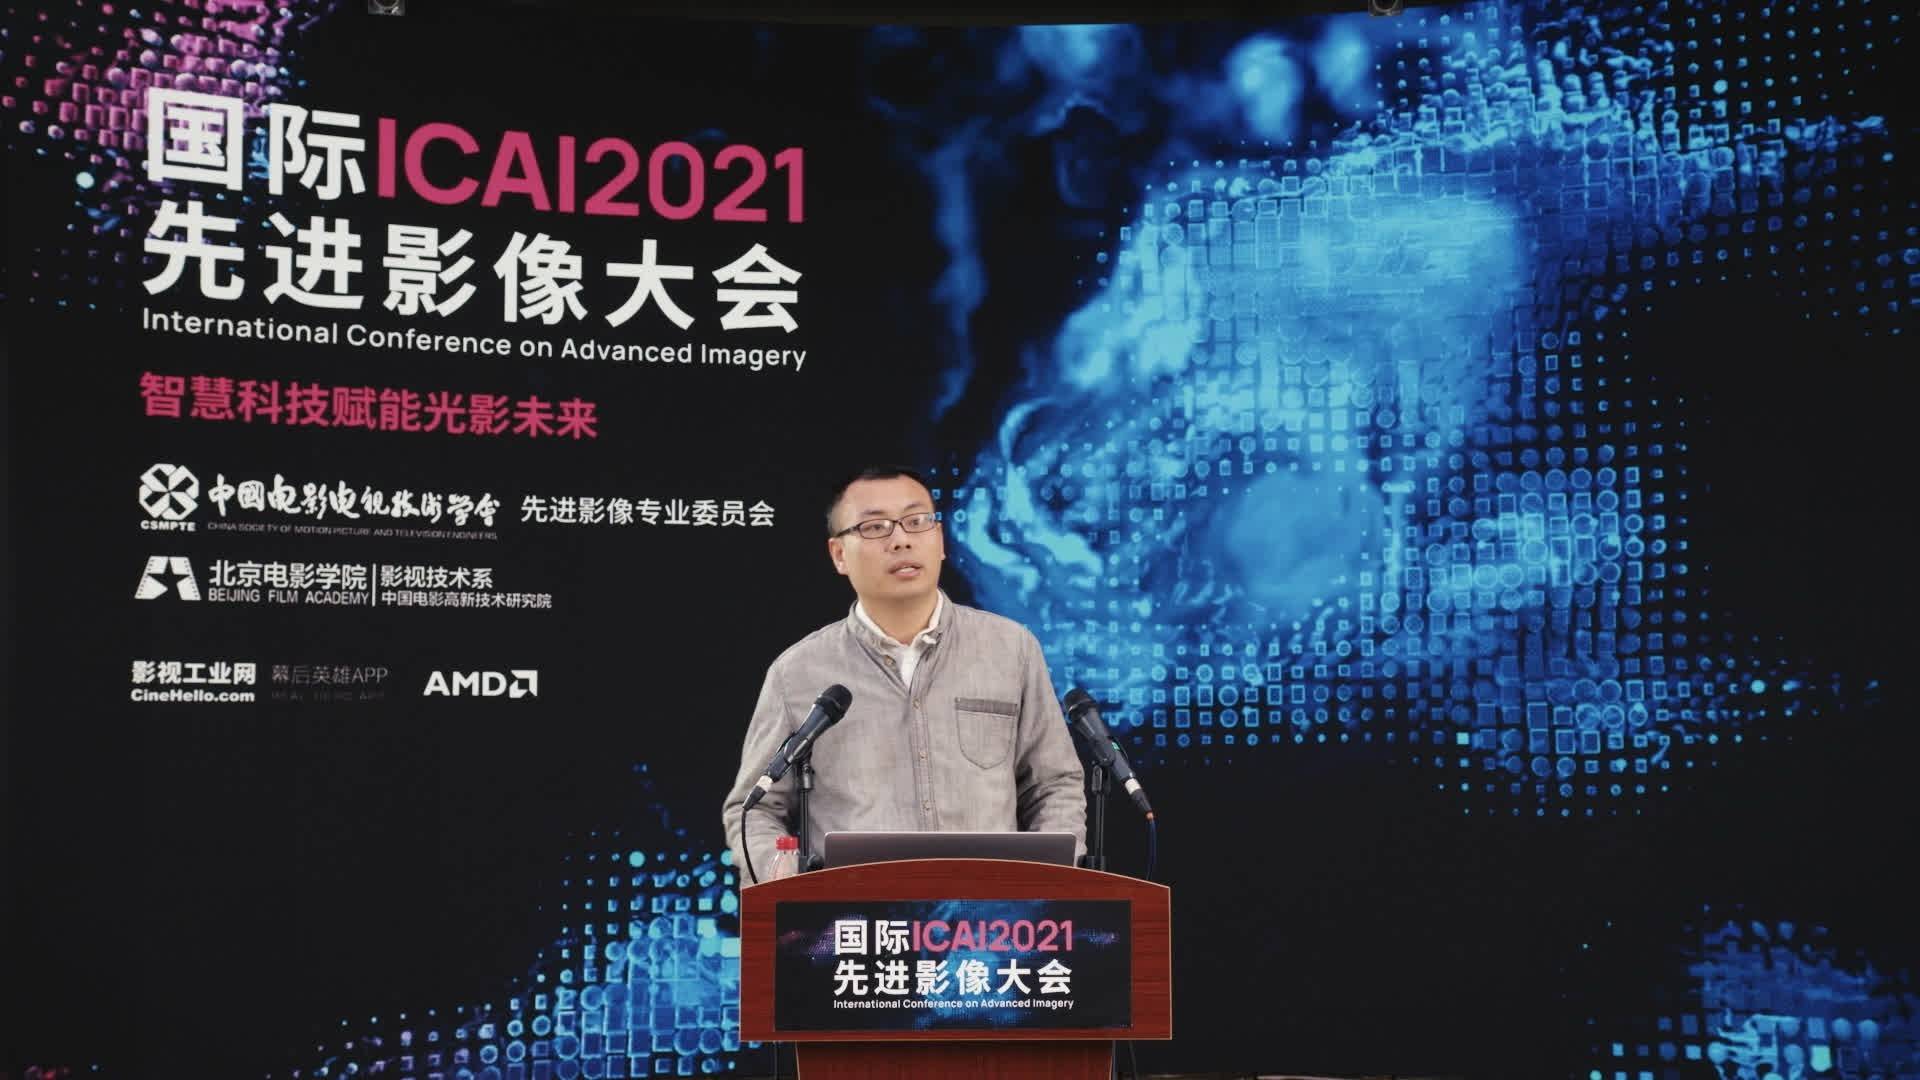 智慧科技赋能光影未来——2021国际先进影像大会（ICAI 2021）成功举办